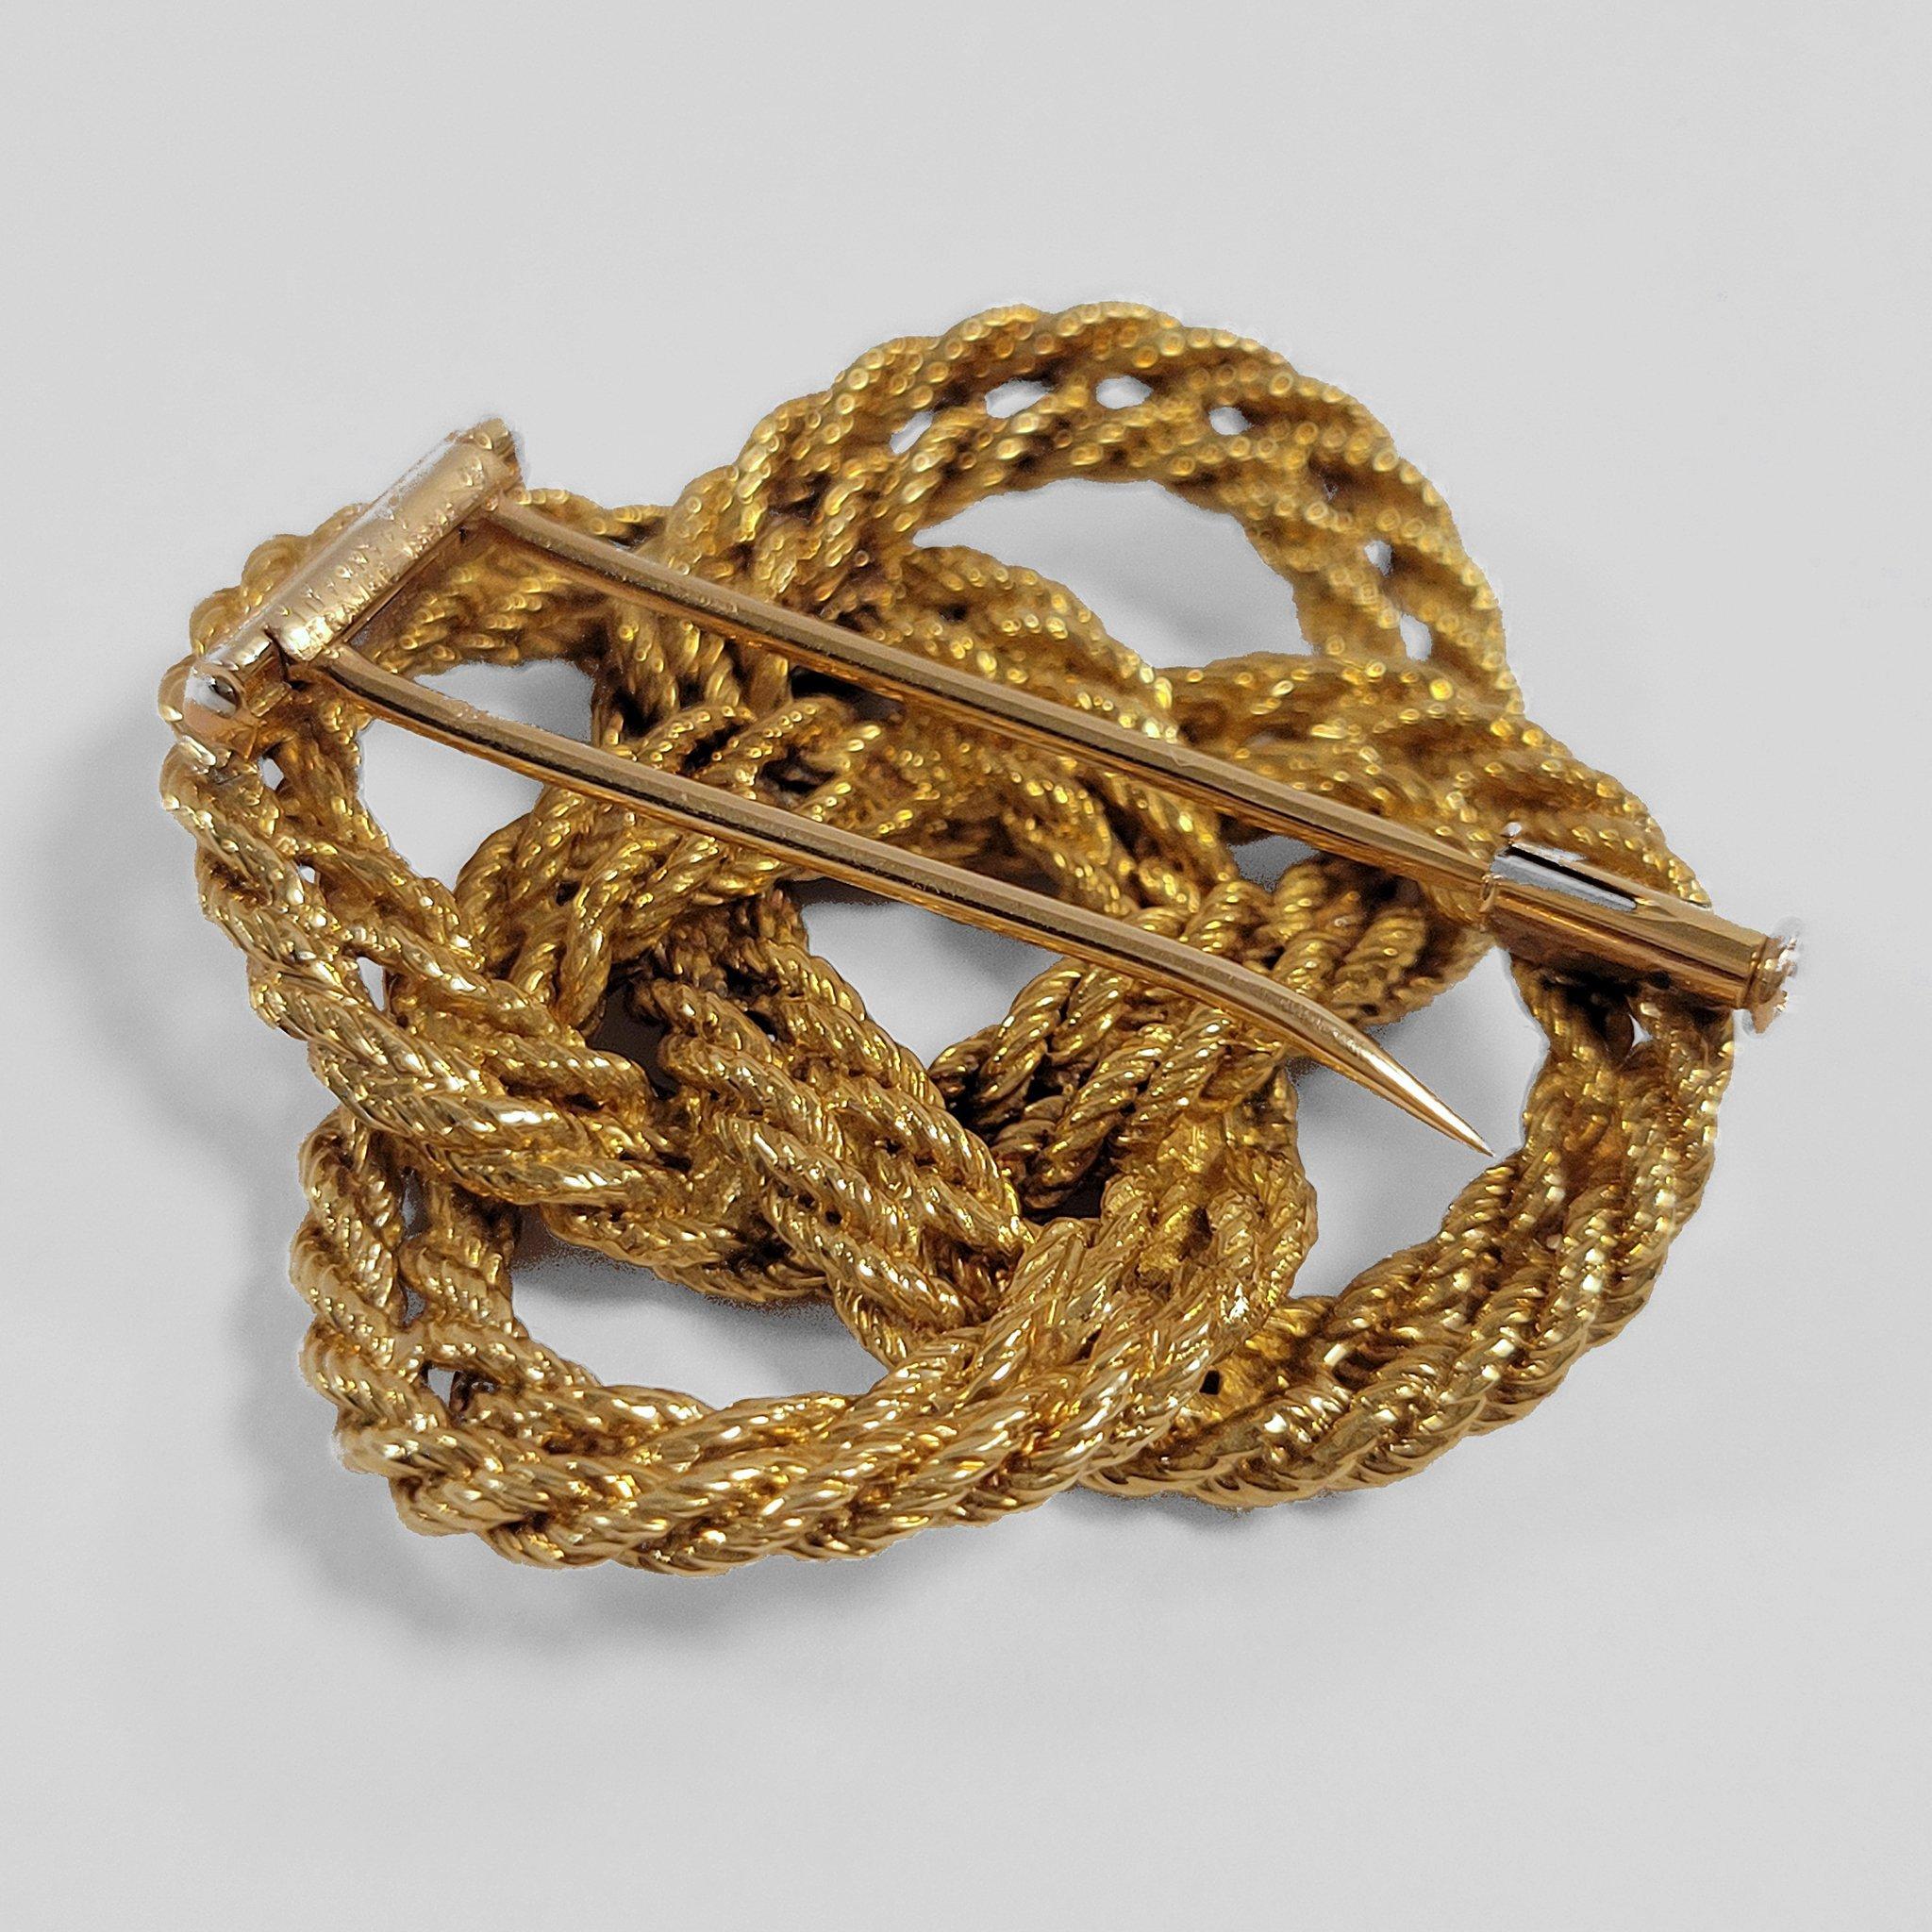 Fabriquée dans les années 1960, cette broche à nœuds en or a été créée par Tiffany & Co. Composé de  un double brin de corde torsadée en or, la broche est conçue comme un motif de nœud carré de huit croisements. Un classique de Tiffany & Co. des